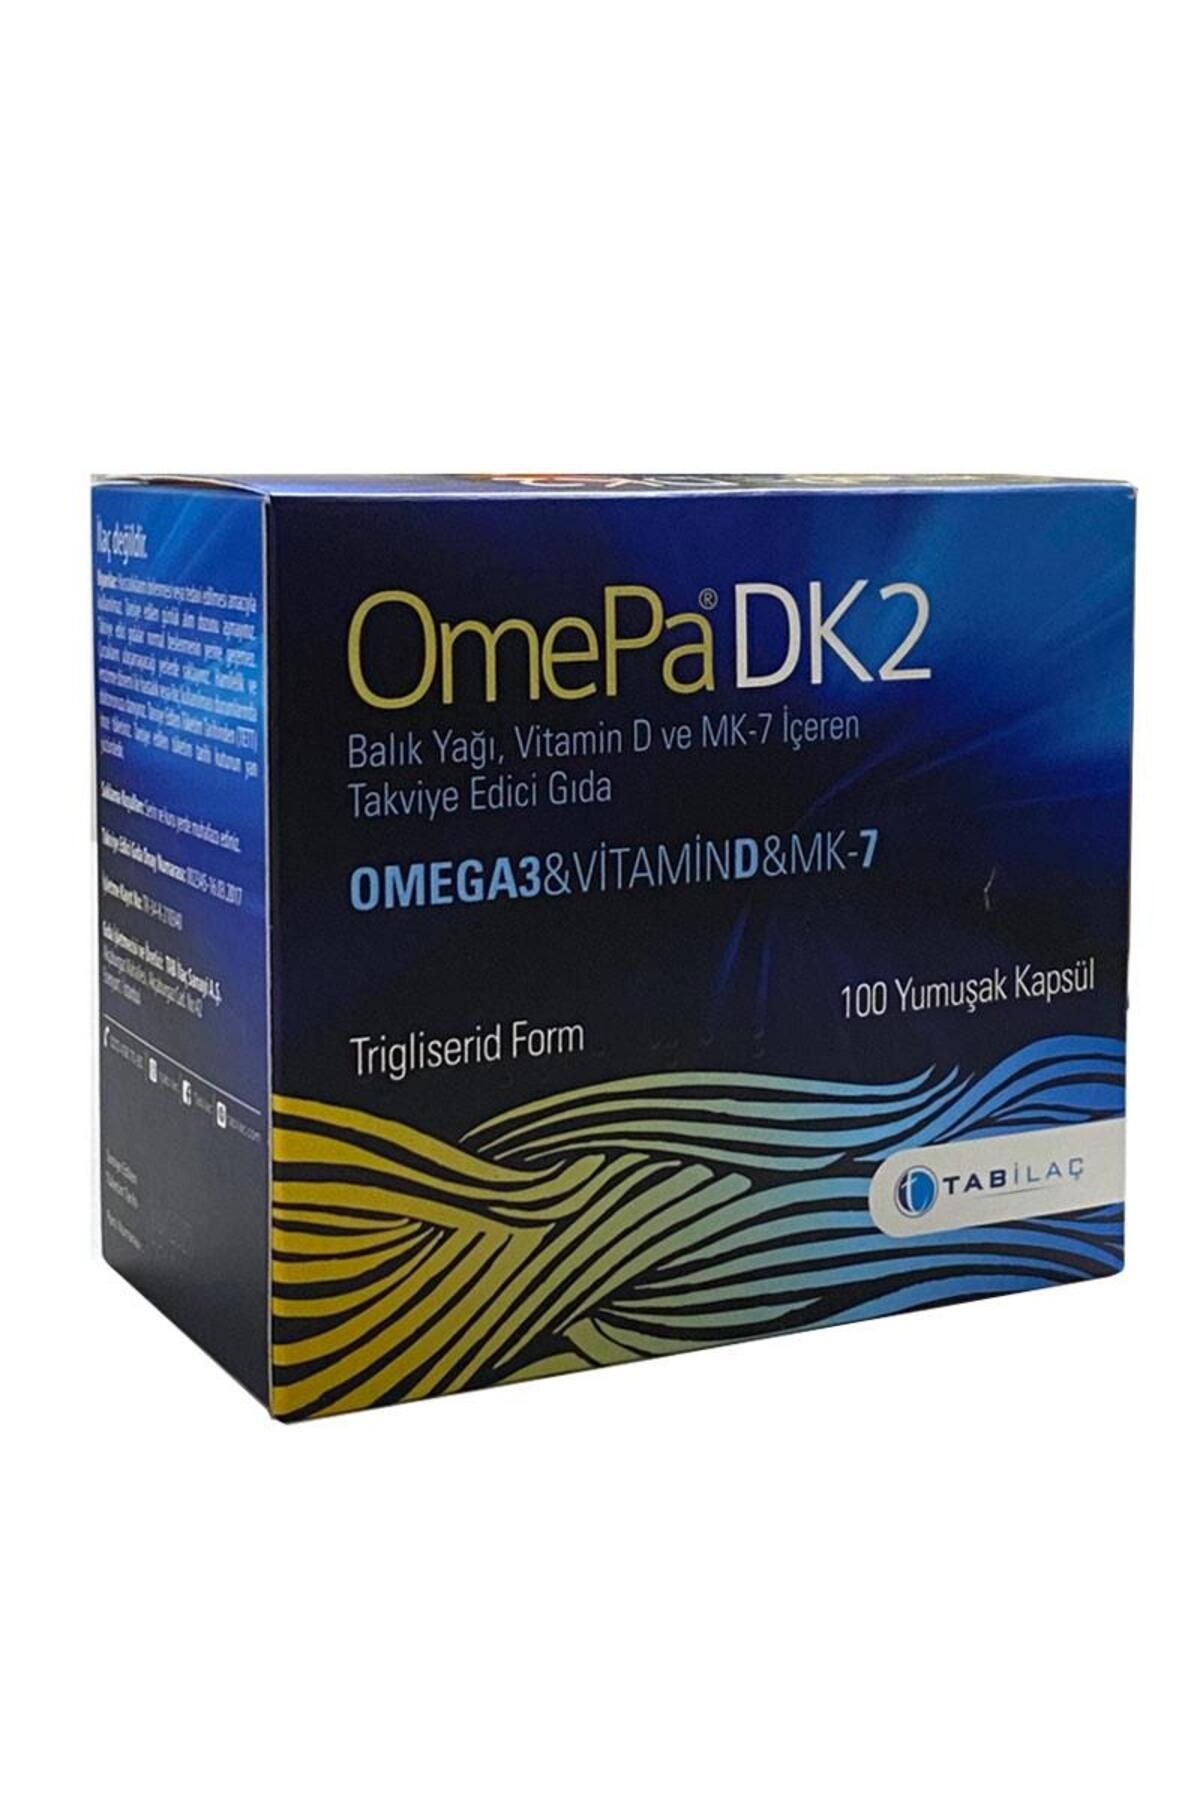 Omepa Dk2 Omega 3 & Vitamin D & Menaq7 100 Yumuşak Kapsül